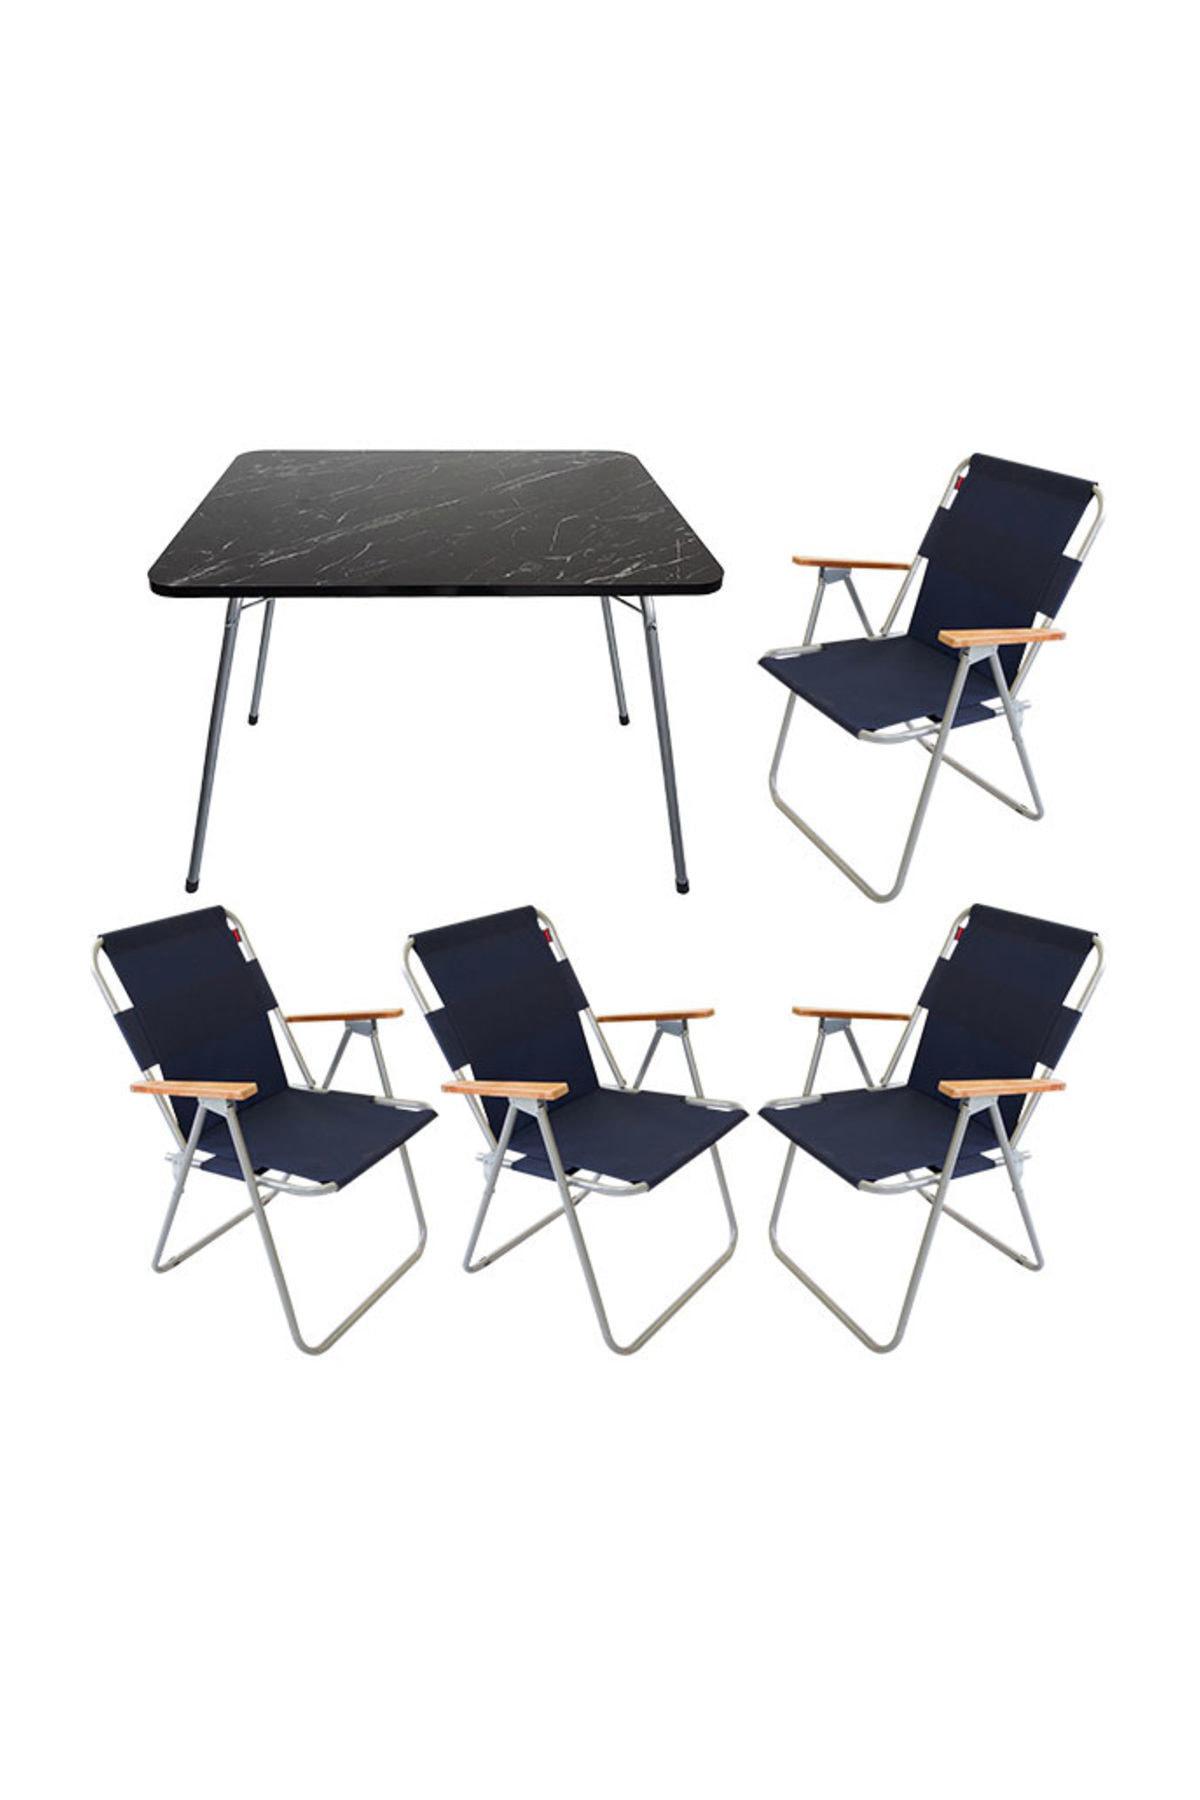 Bofigo 60 x 80 cm Tabureli Çantalı Dikdörtgen Granit Katlanır Kamp Masası Siyah + 4 Adet Katlanır Sandalye